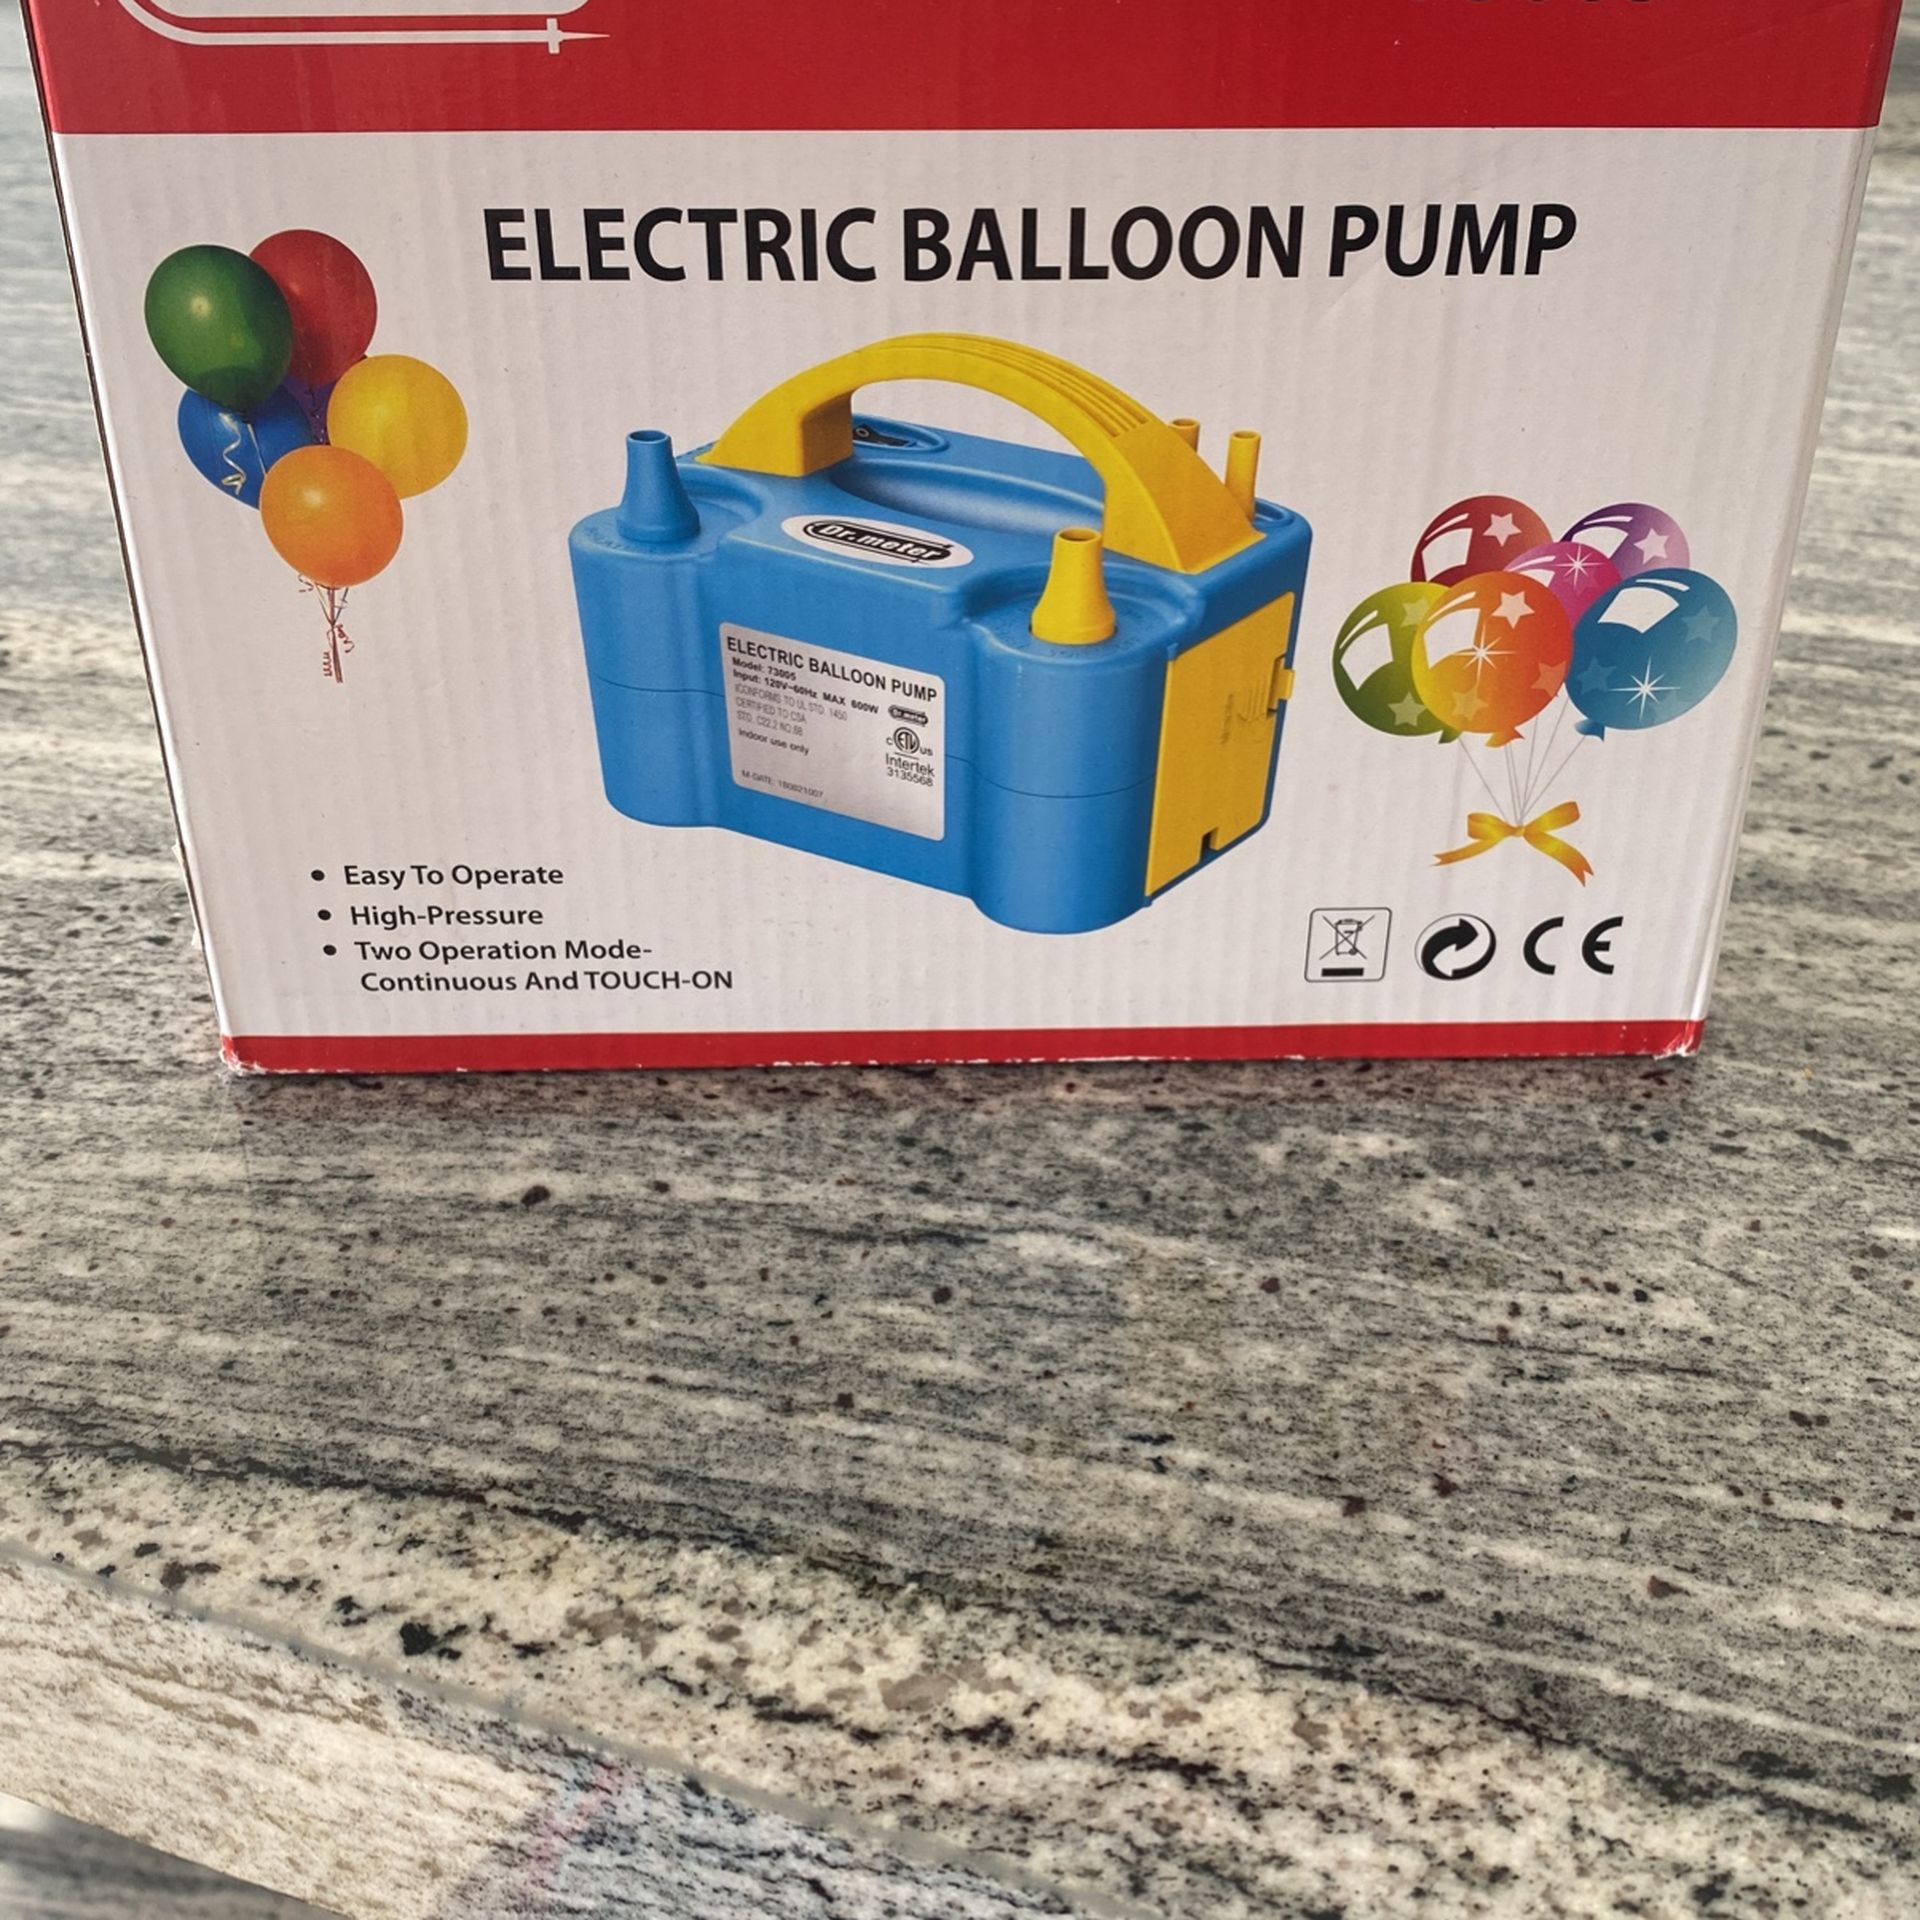 Eletical Balloon Pump